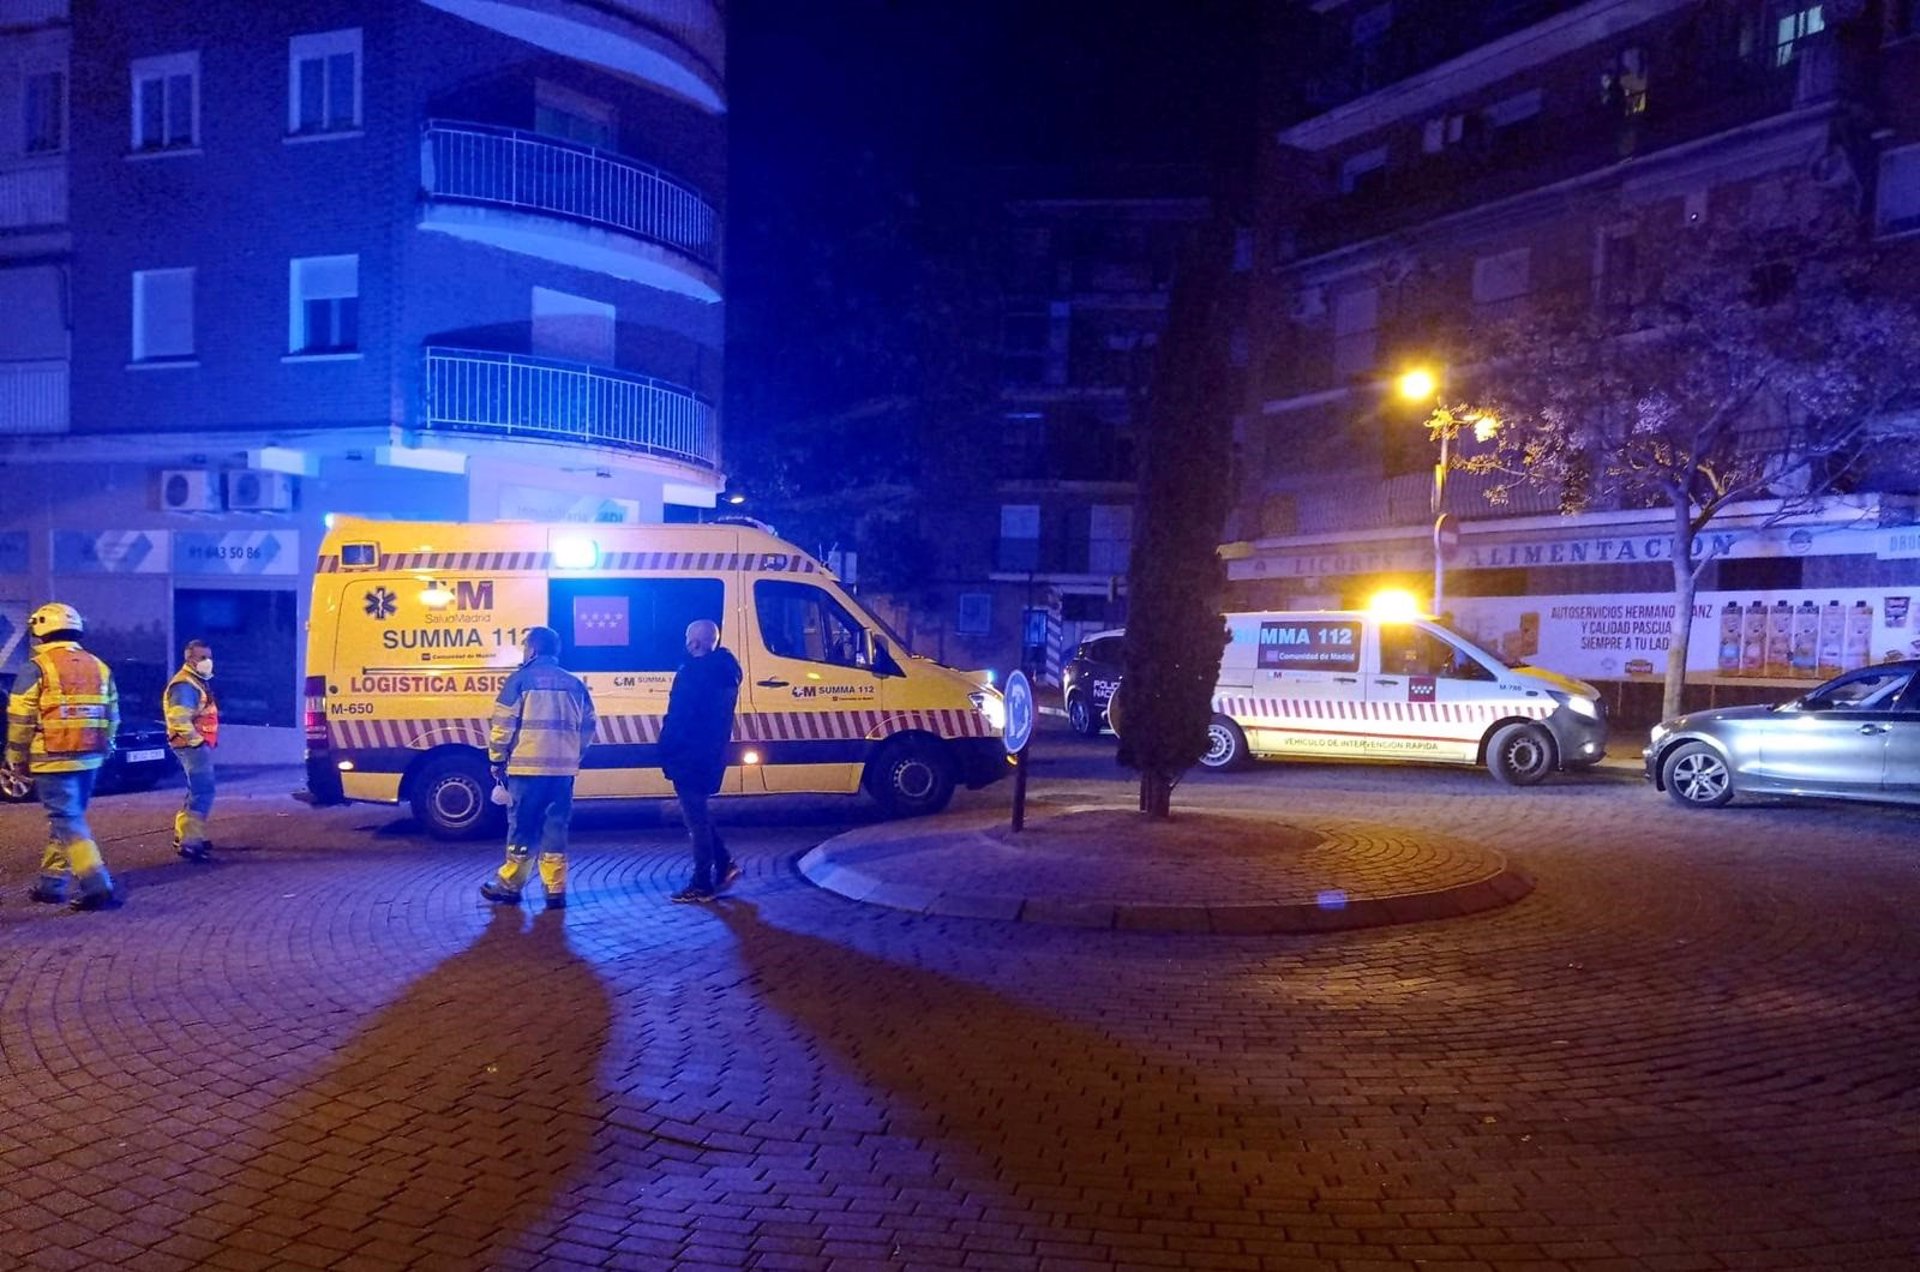 Tres jóvenes heridos, uno de ellos grave, al ser apuñalados tras salir de una discoteca en Alcorcón (Madrid)